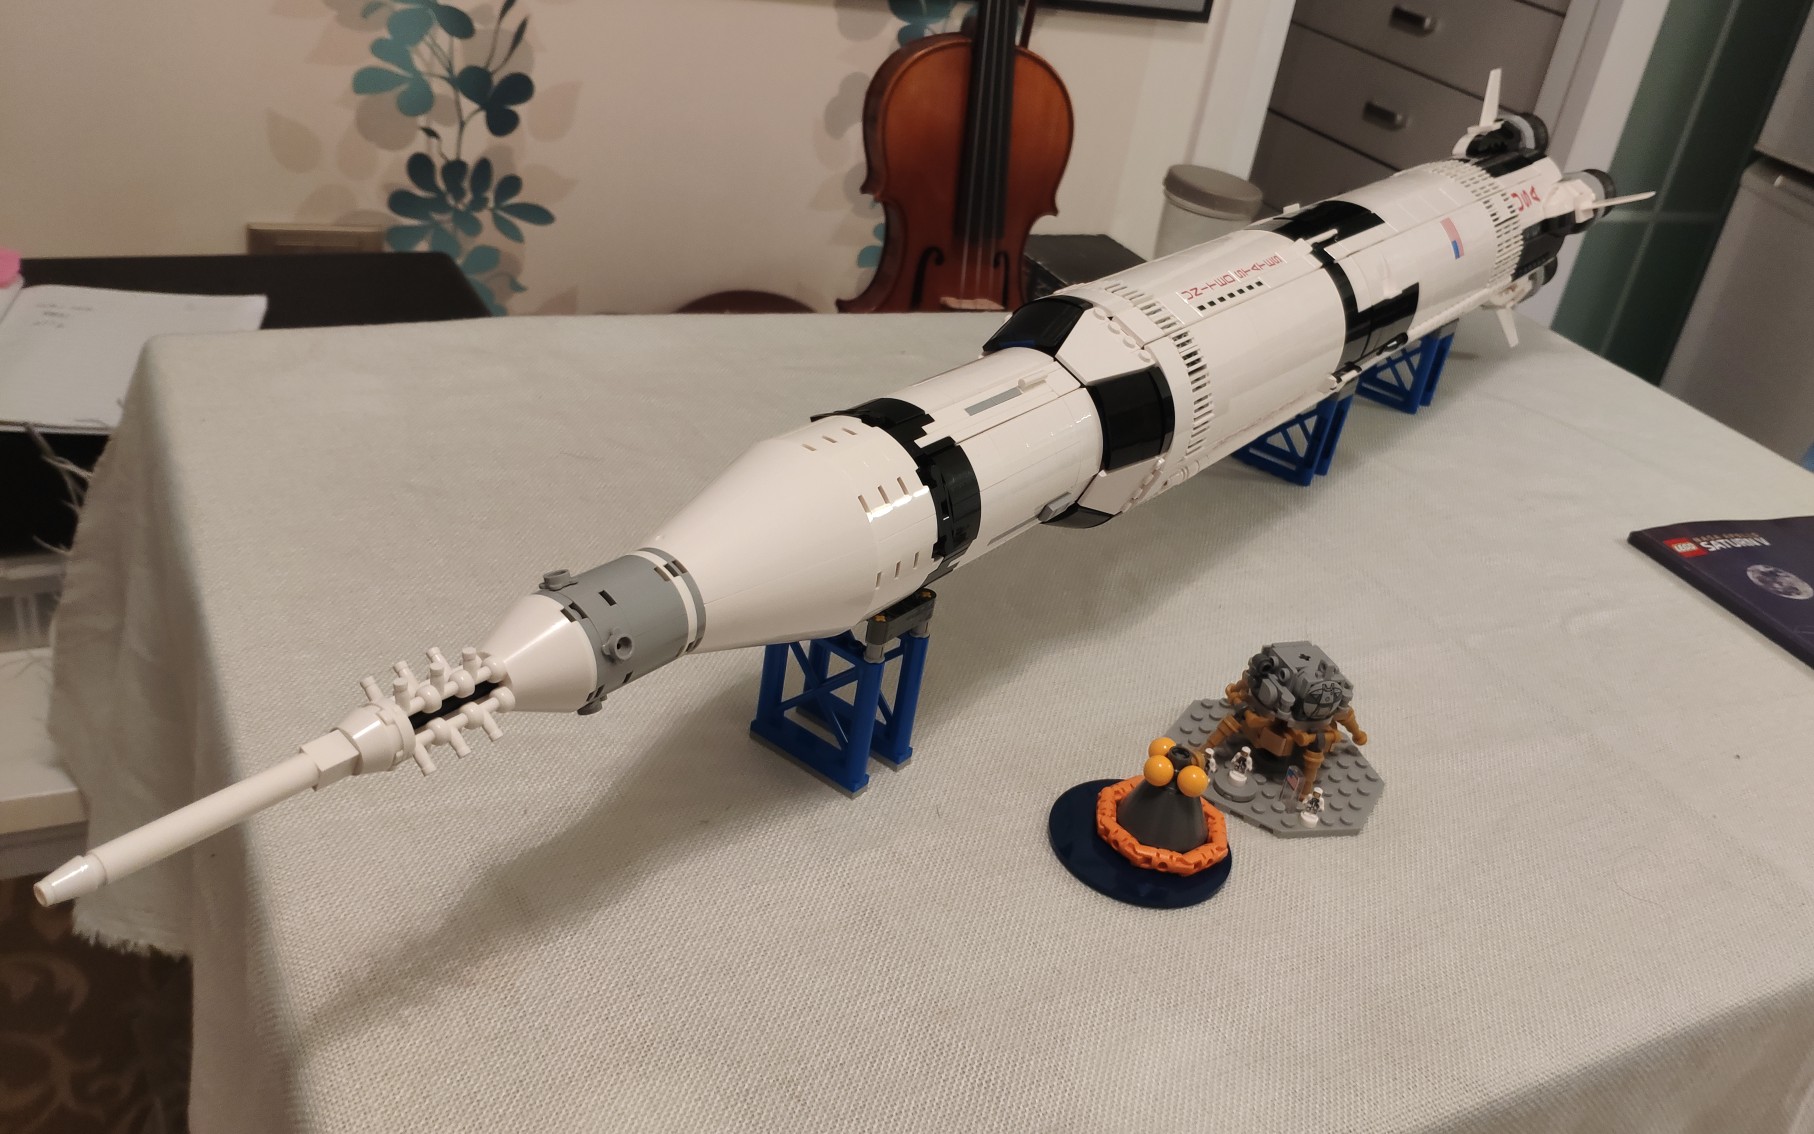 【土豆乐高】lego测评 21309 土星五号 运载火箭 宇航航天爱好者必备